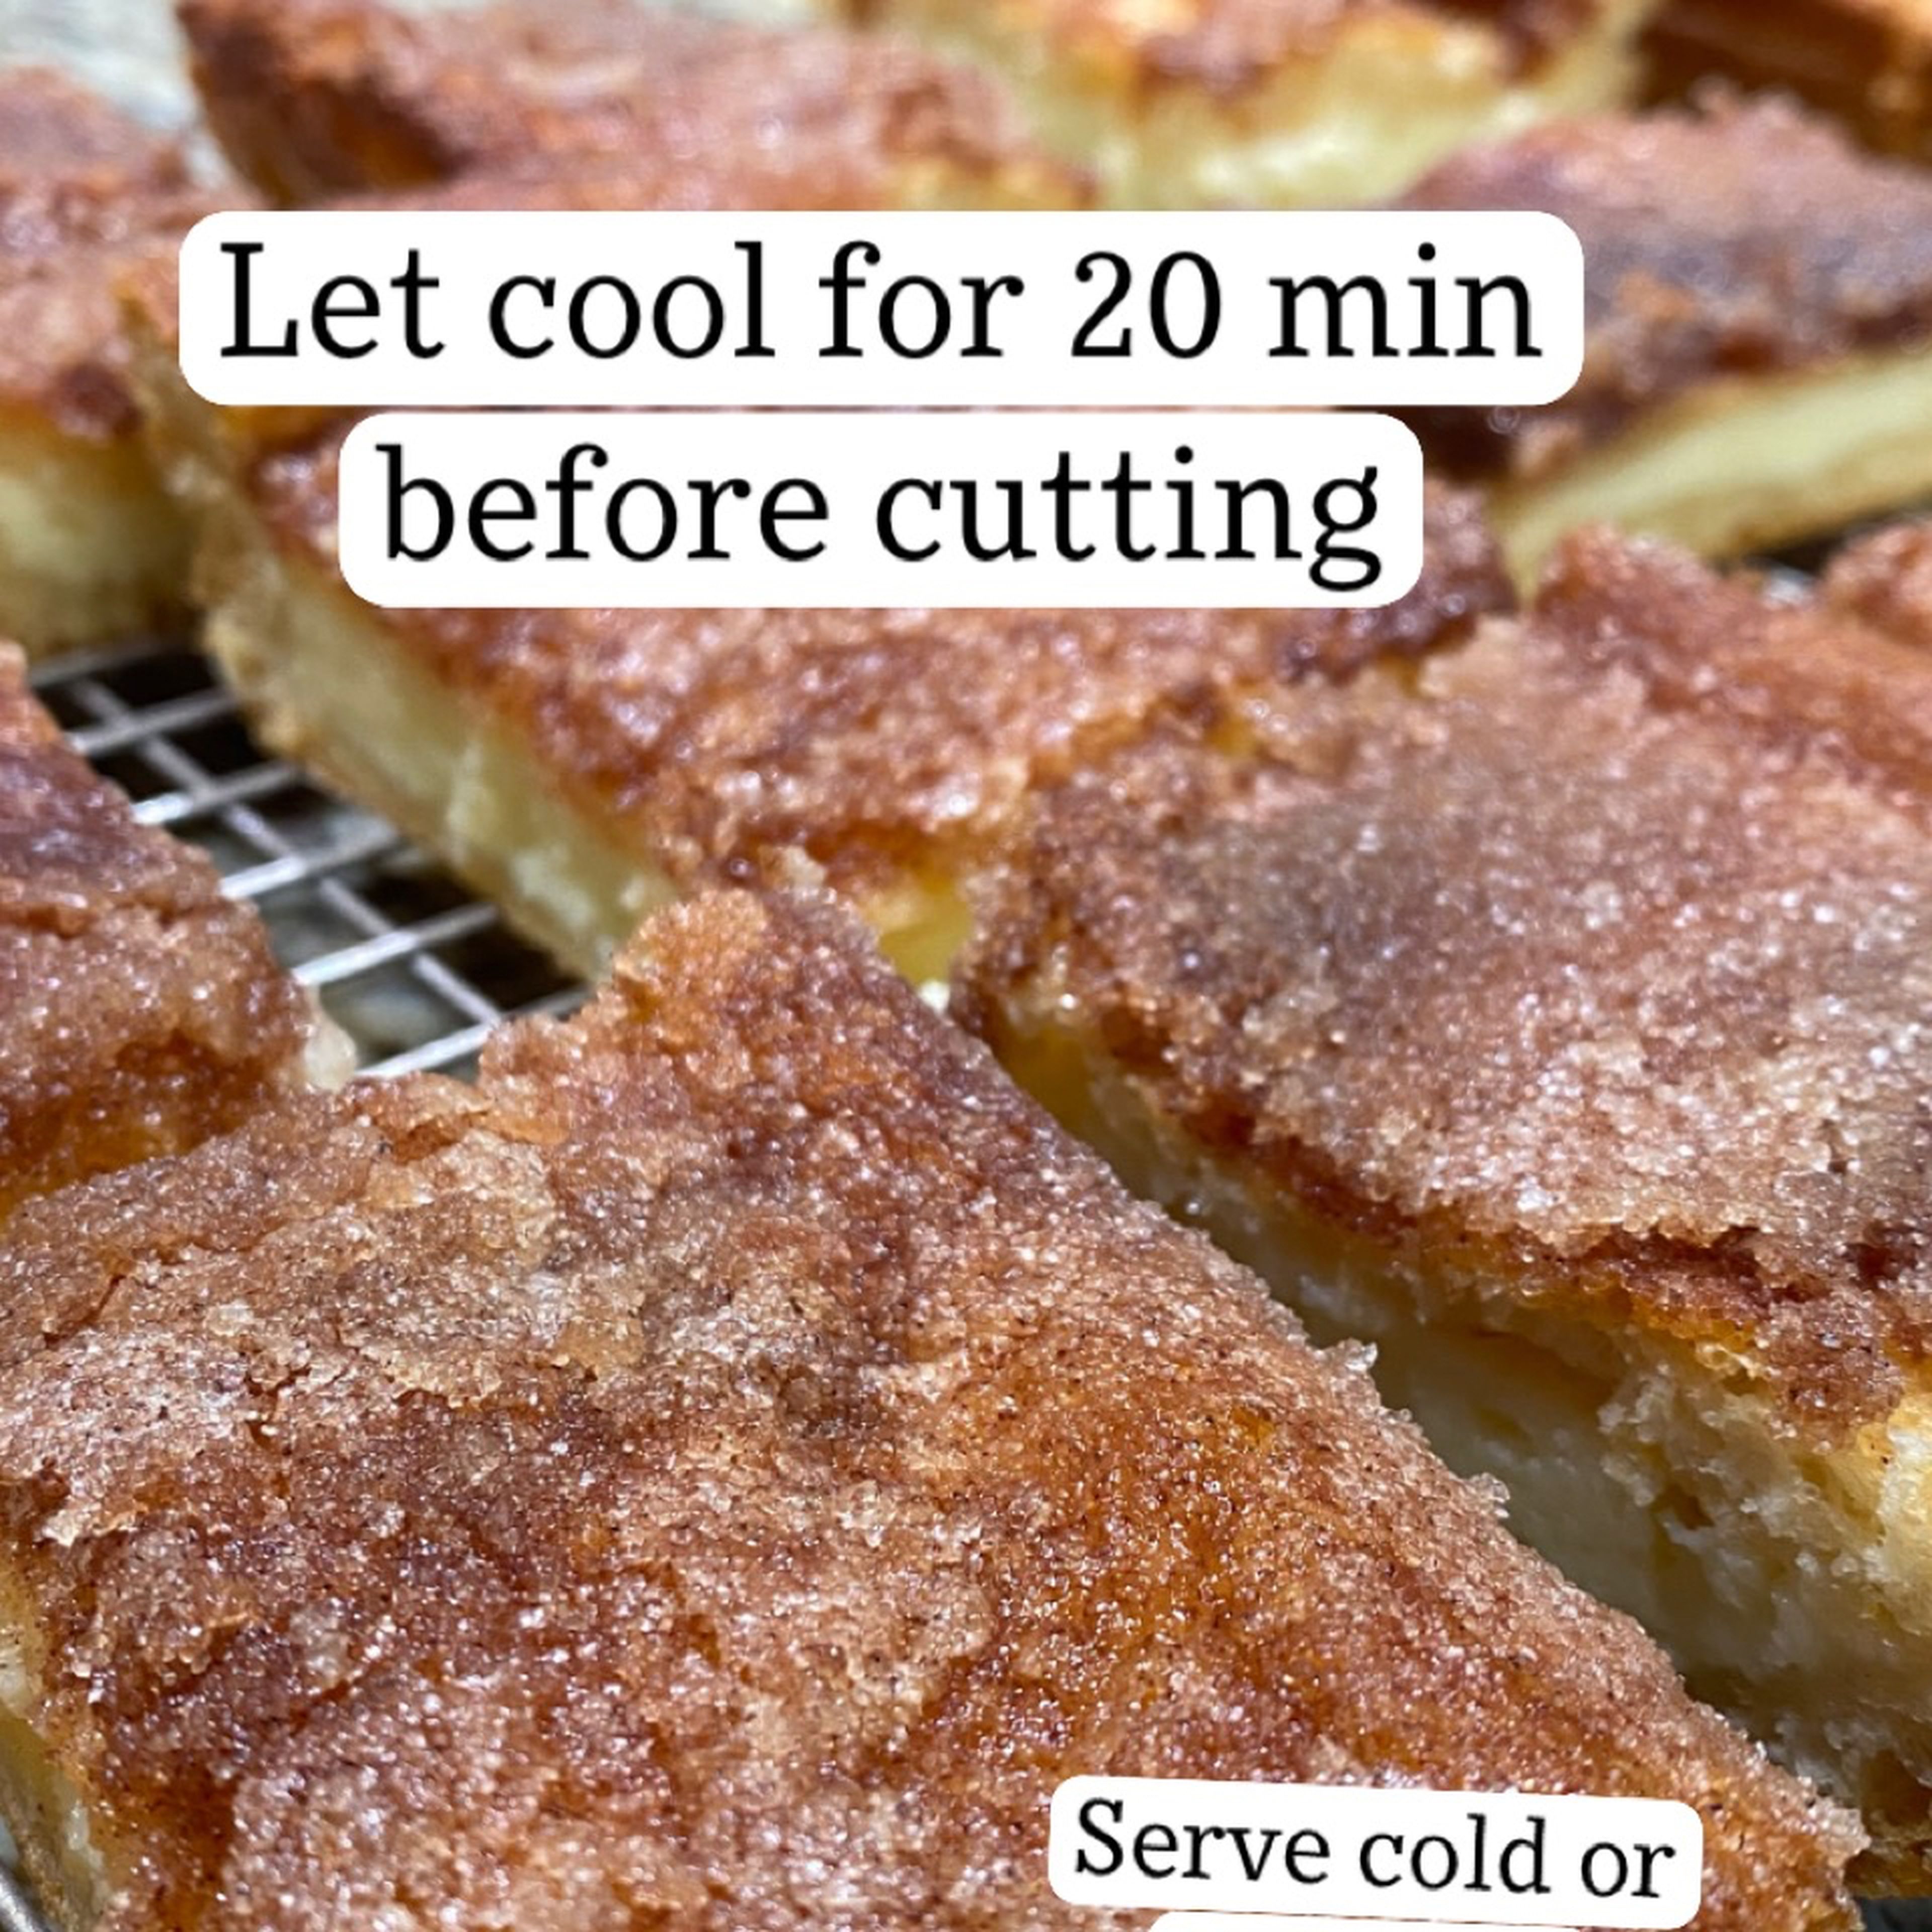 Serve cold or warm. Enjoy!